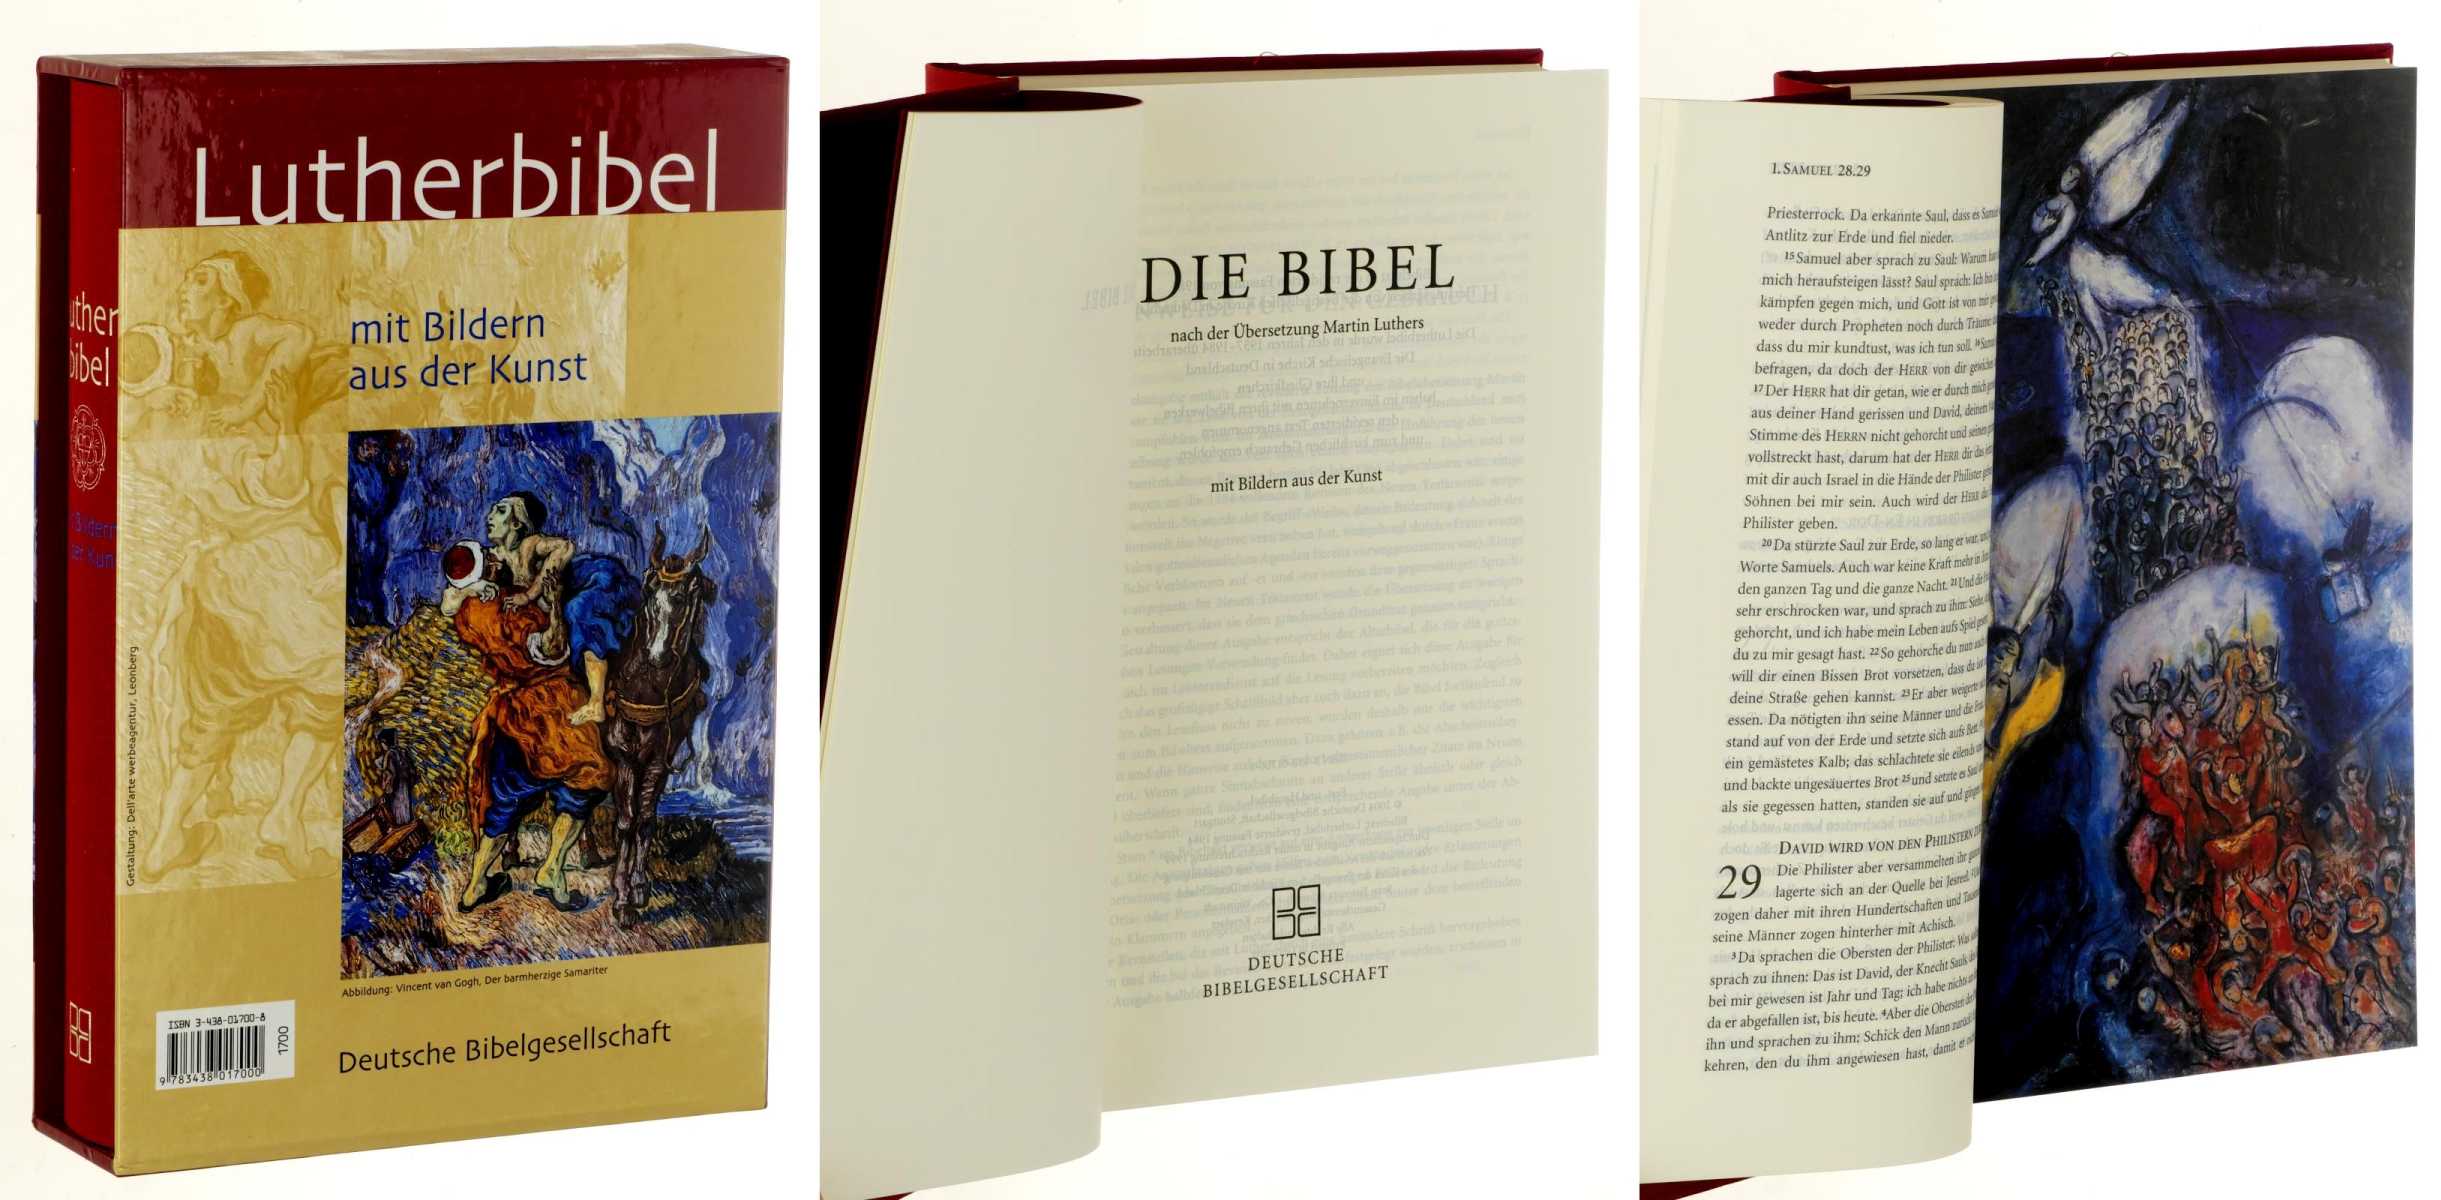 Luther (Übers.):  Die Bibel. nach der Übersetzung Martin Luthers. Mit Bildern aus der Kunst. Bibeltext in der revidierten Fassung von 1984]. [Bibeltext in der revidierten Fassung von 1984]. 